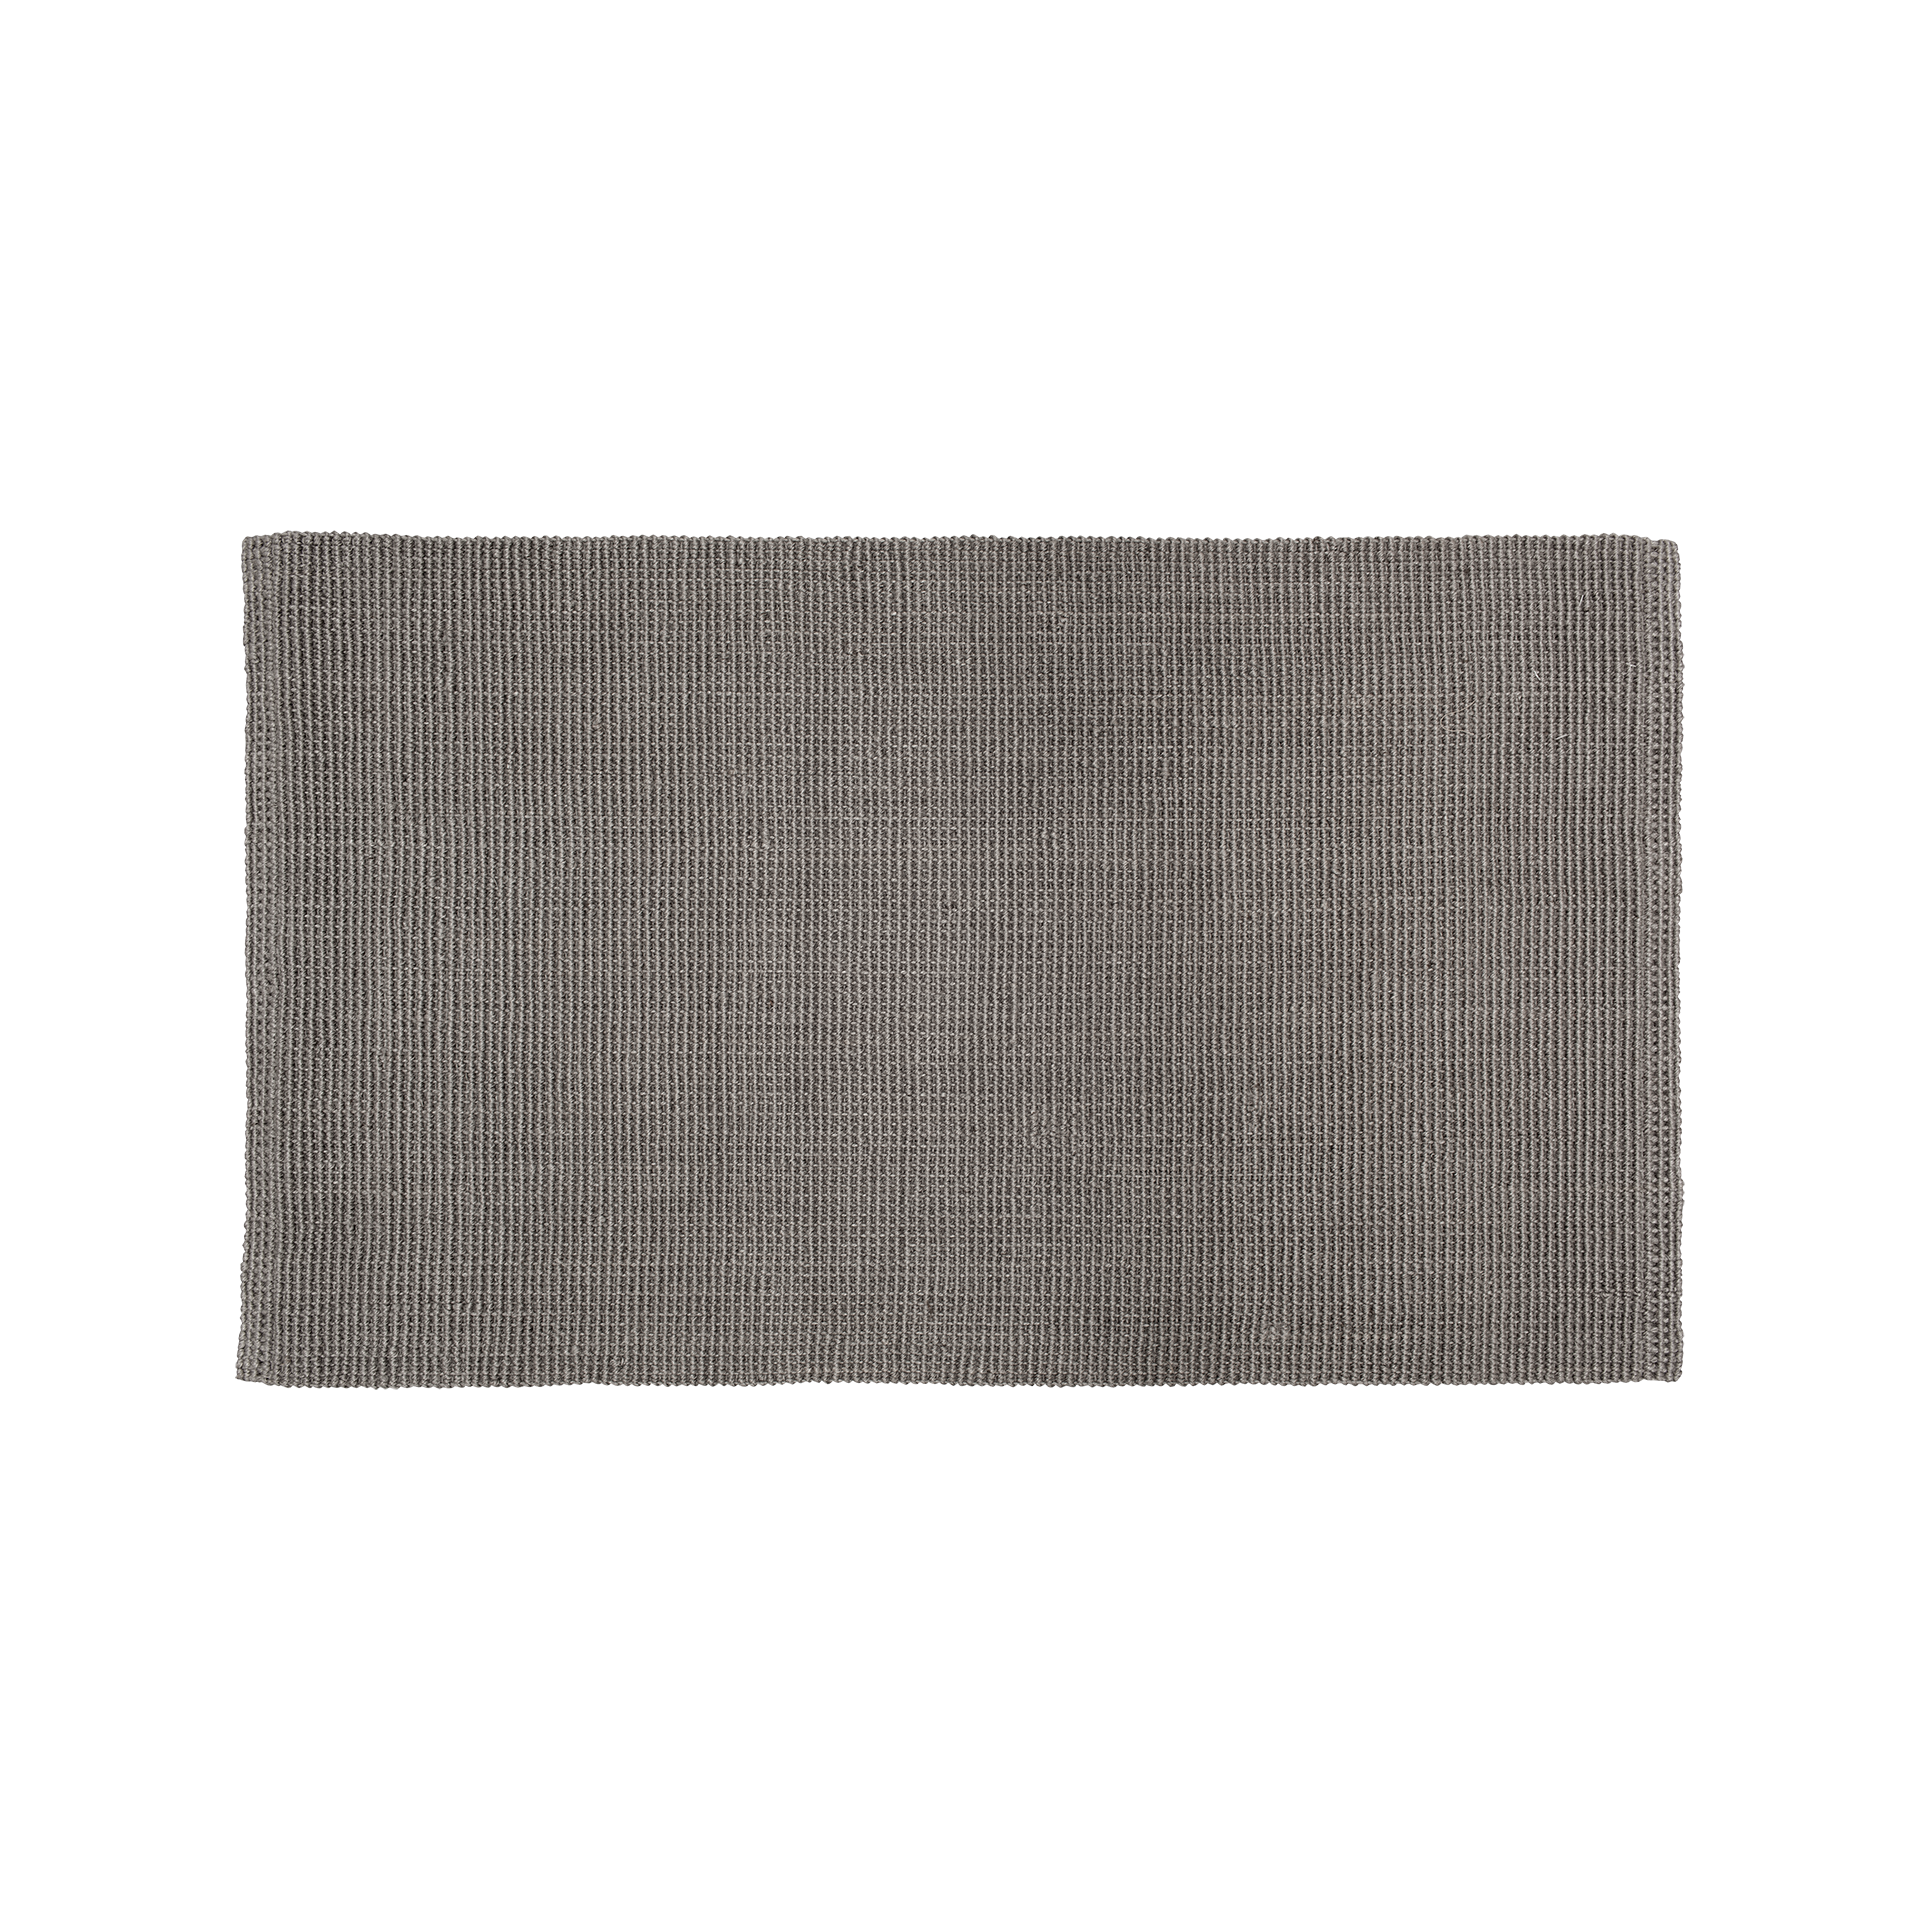 Doormat Fiona cement grey 70x120cm